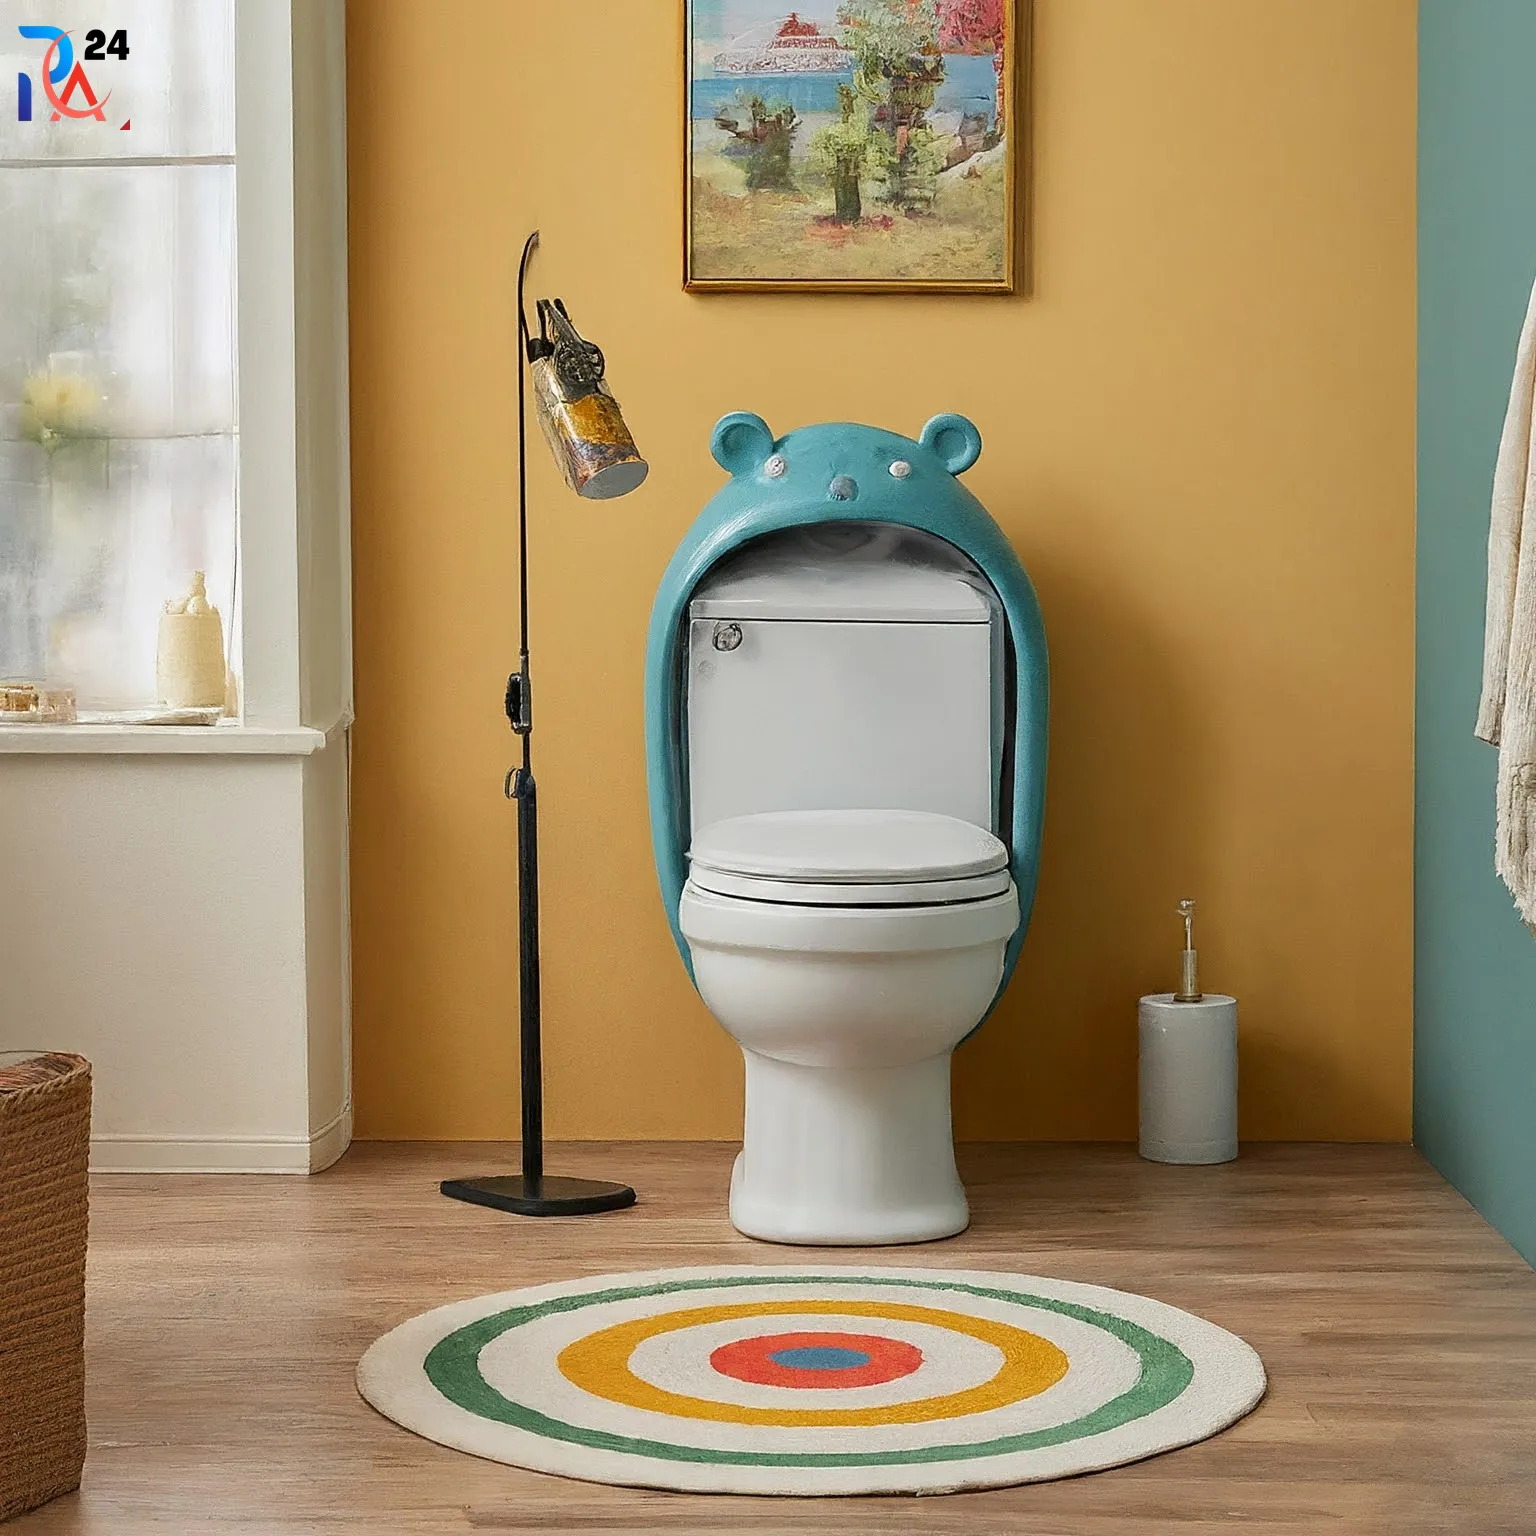 Colorful Kids Bathroom Ideas51